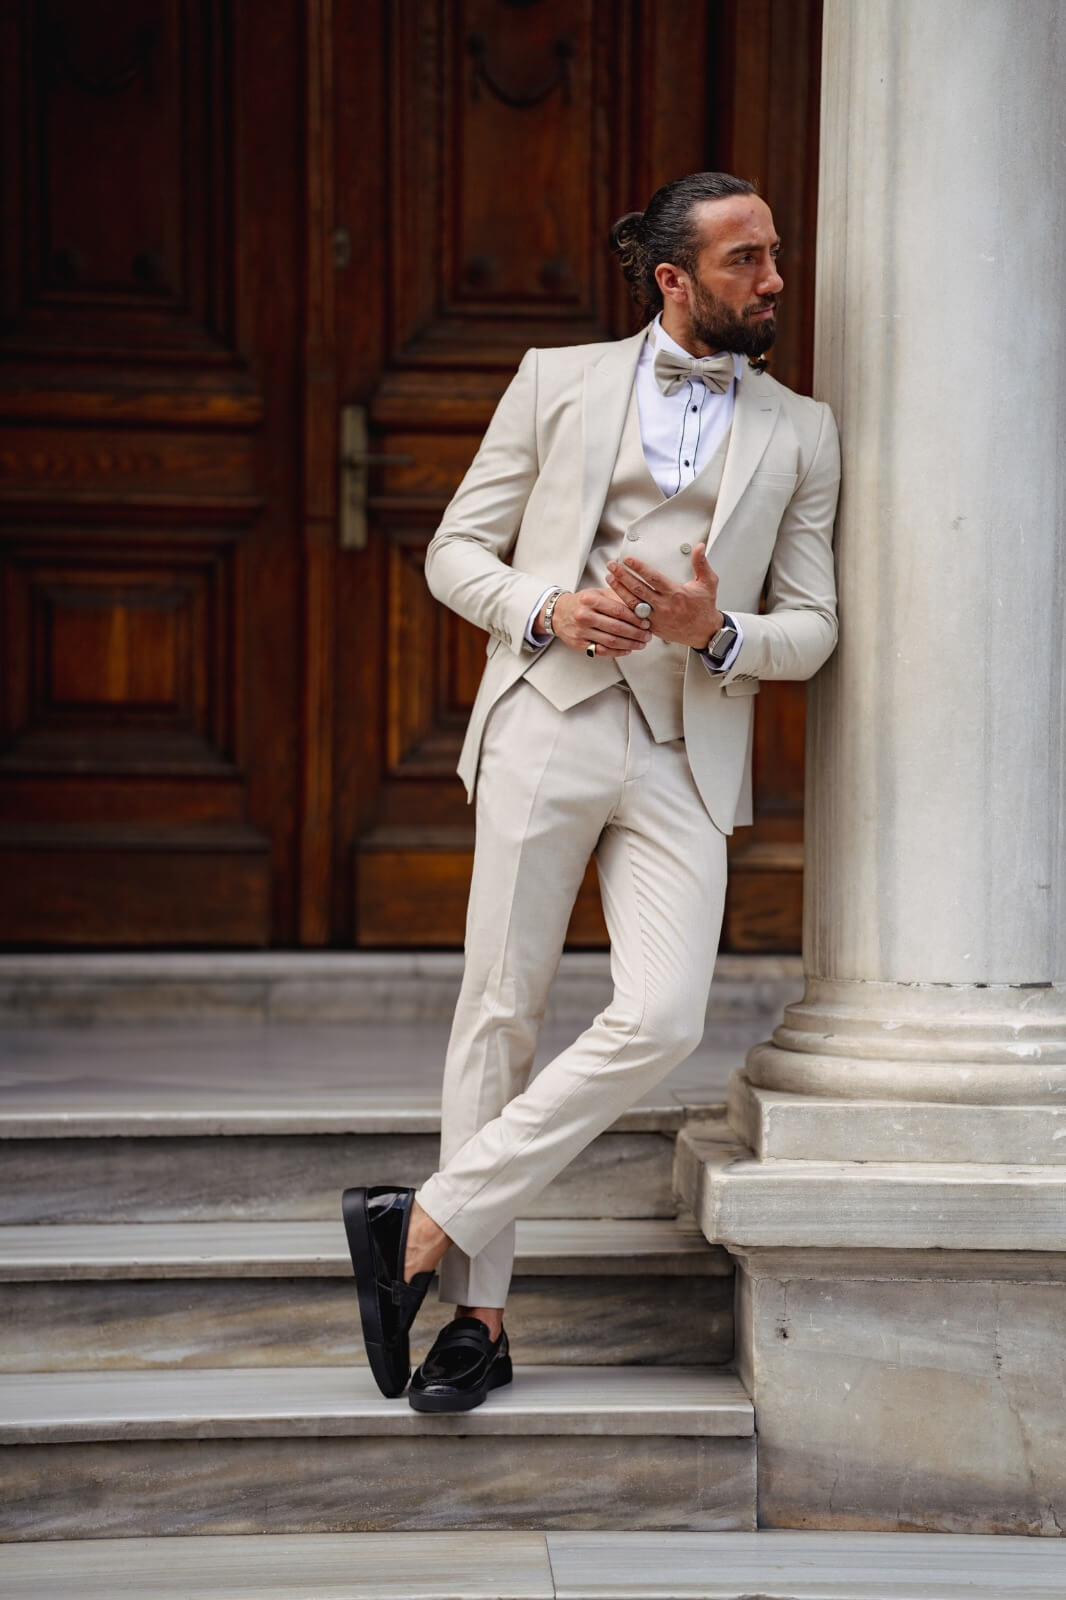 wedding tuxedo suits for men colors